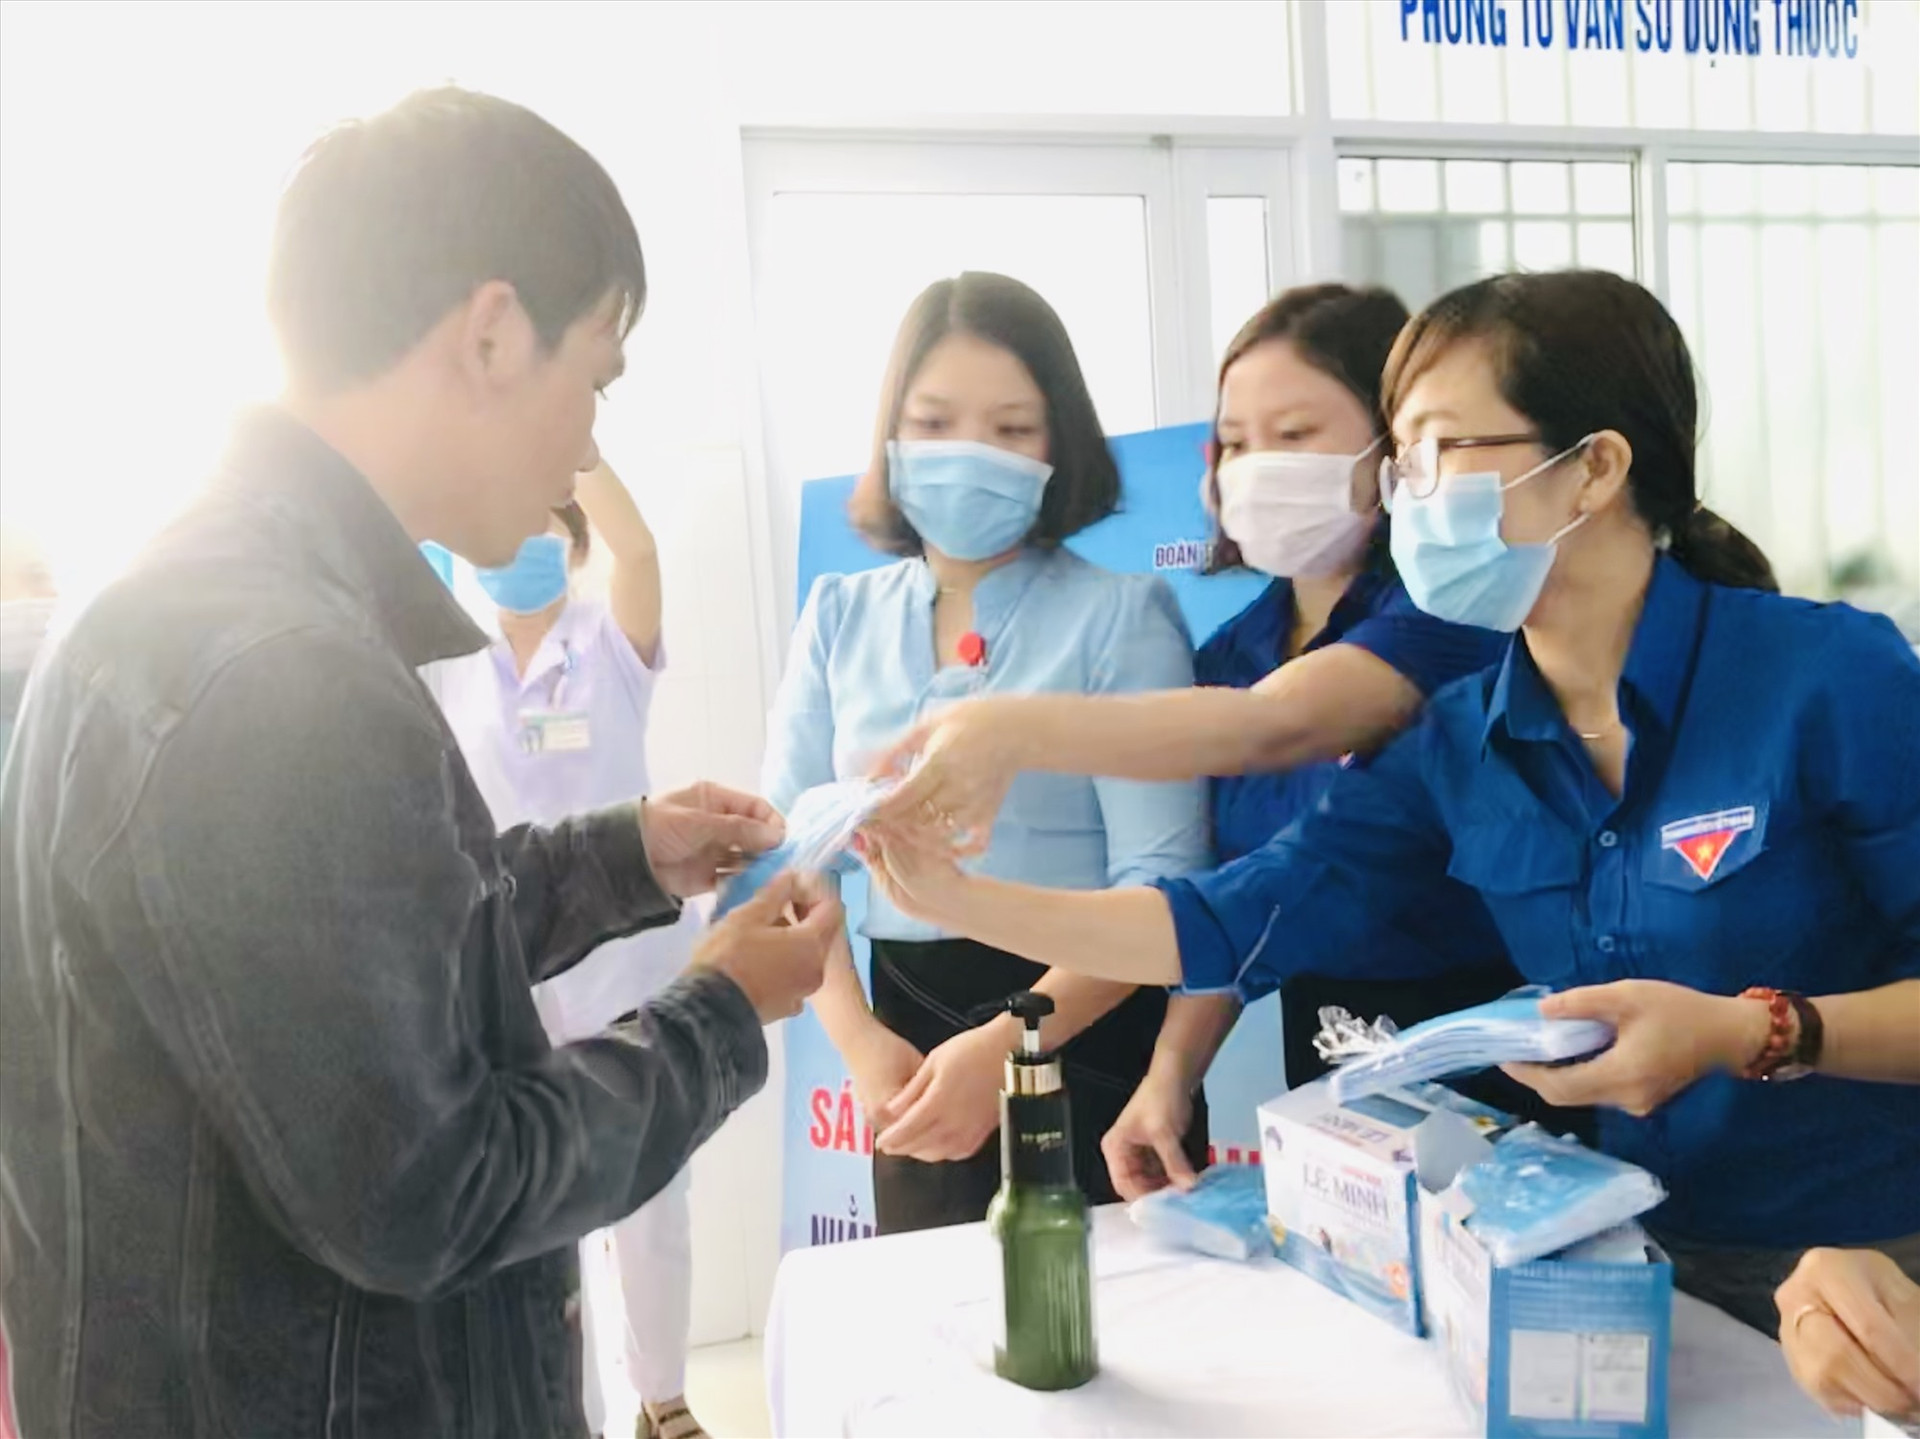 Đoàn viên thanh niên BVĐK Quảng Nam phát và hướng dẫn đeo khẩu trang đúng cách tại Khoa khám bệnh. Ảnh: C.N